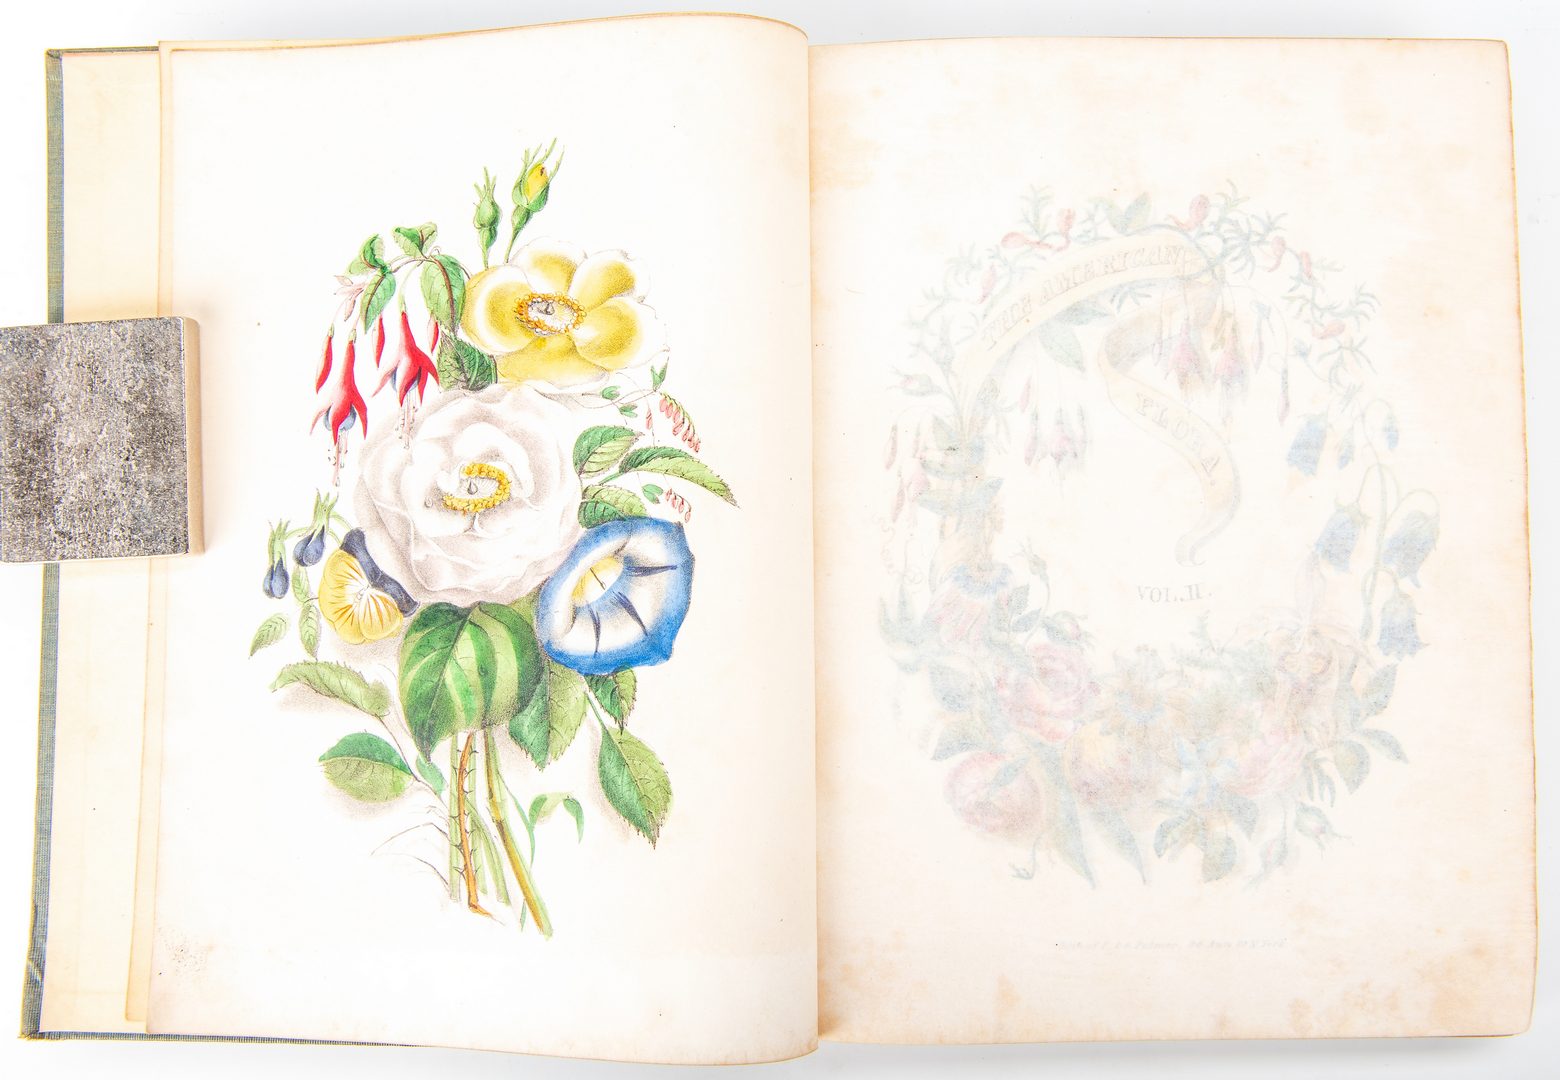 Lot 807: A. B. Strong, American Flora Vol. I & II, 1847-48